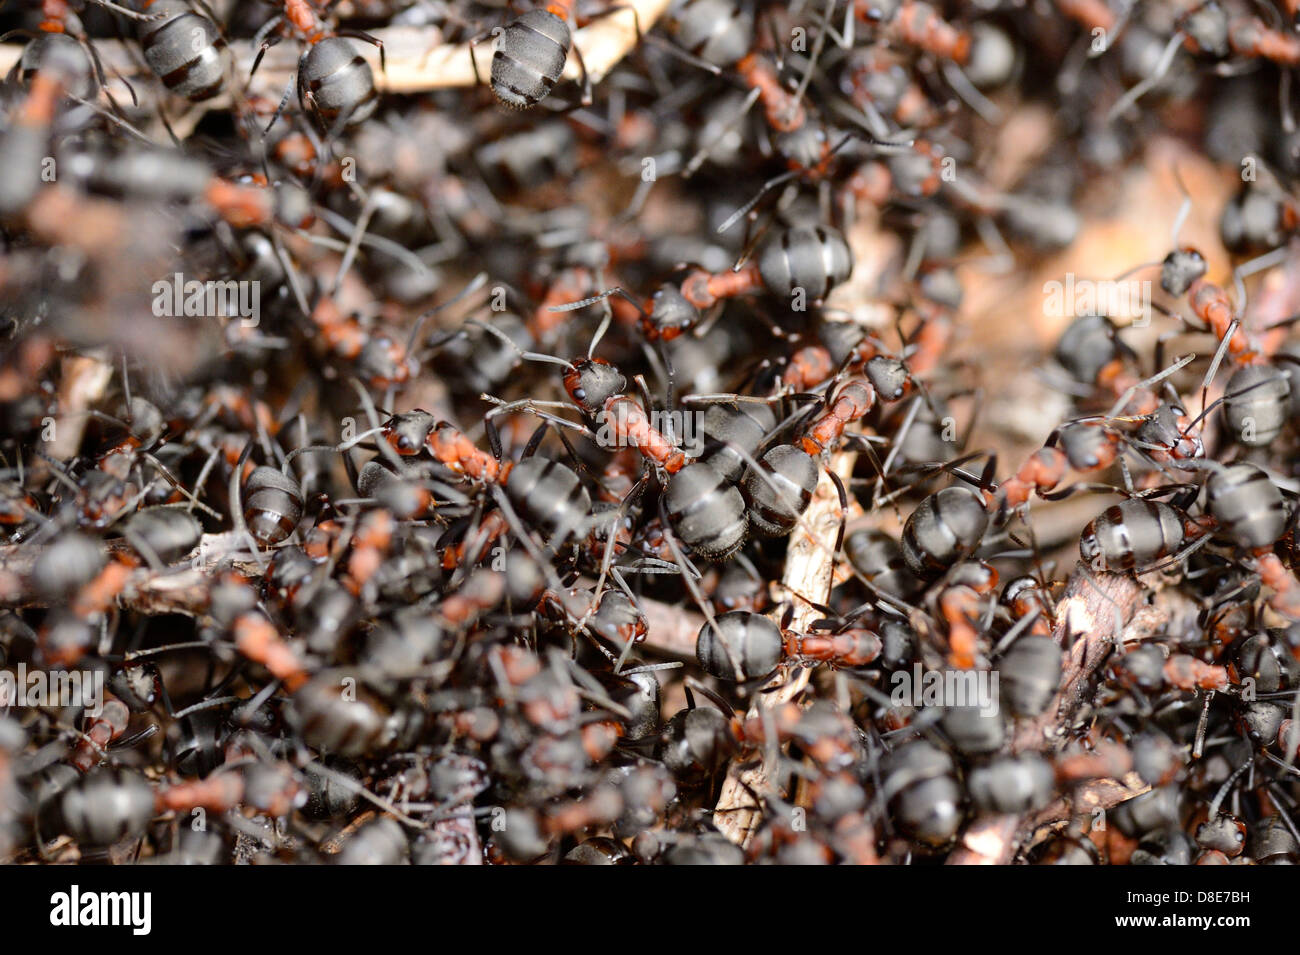 Formica formiche su un formicaio Foto Stock